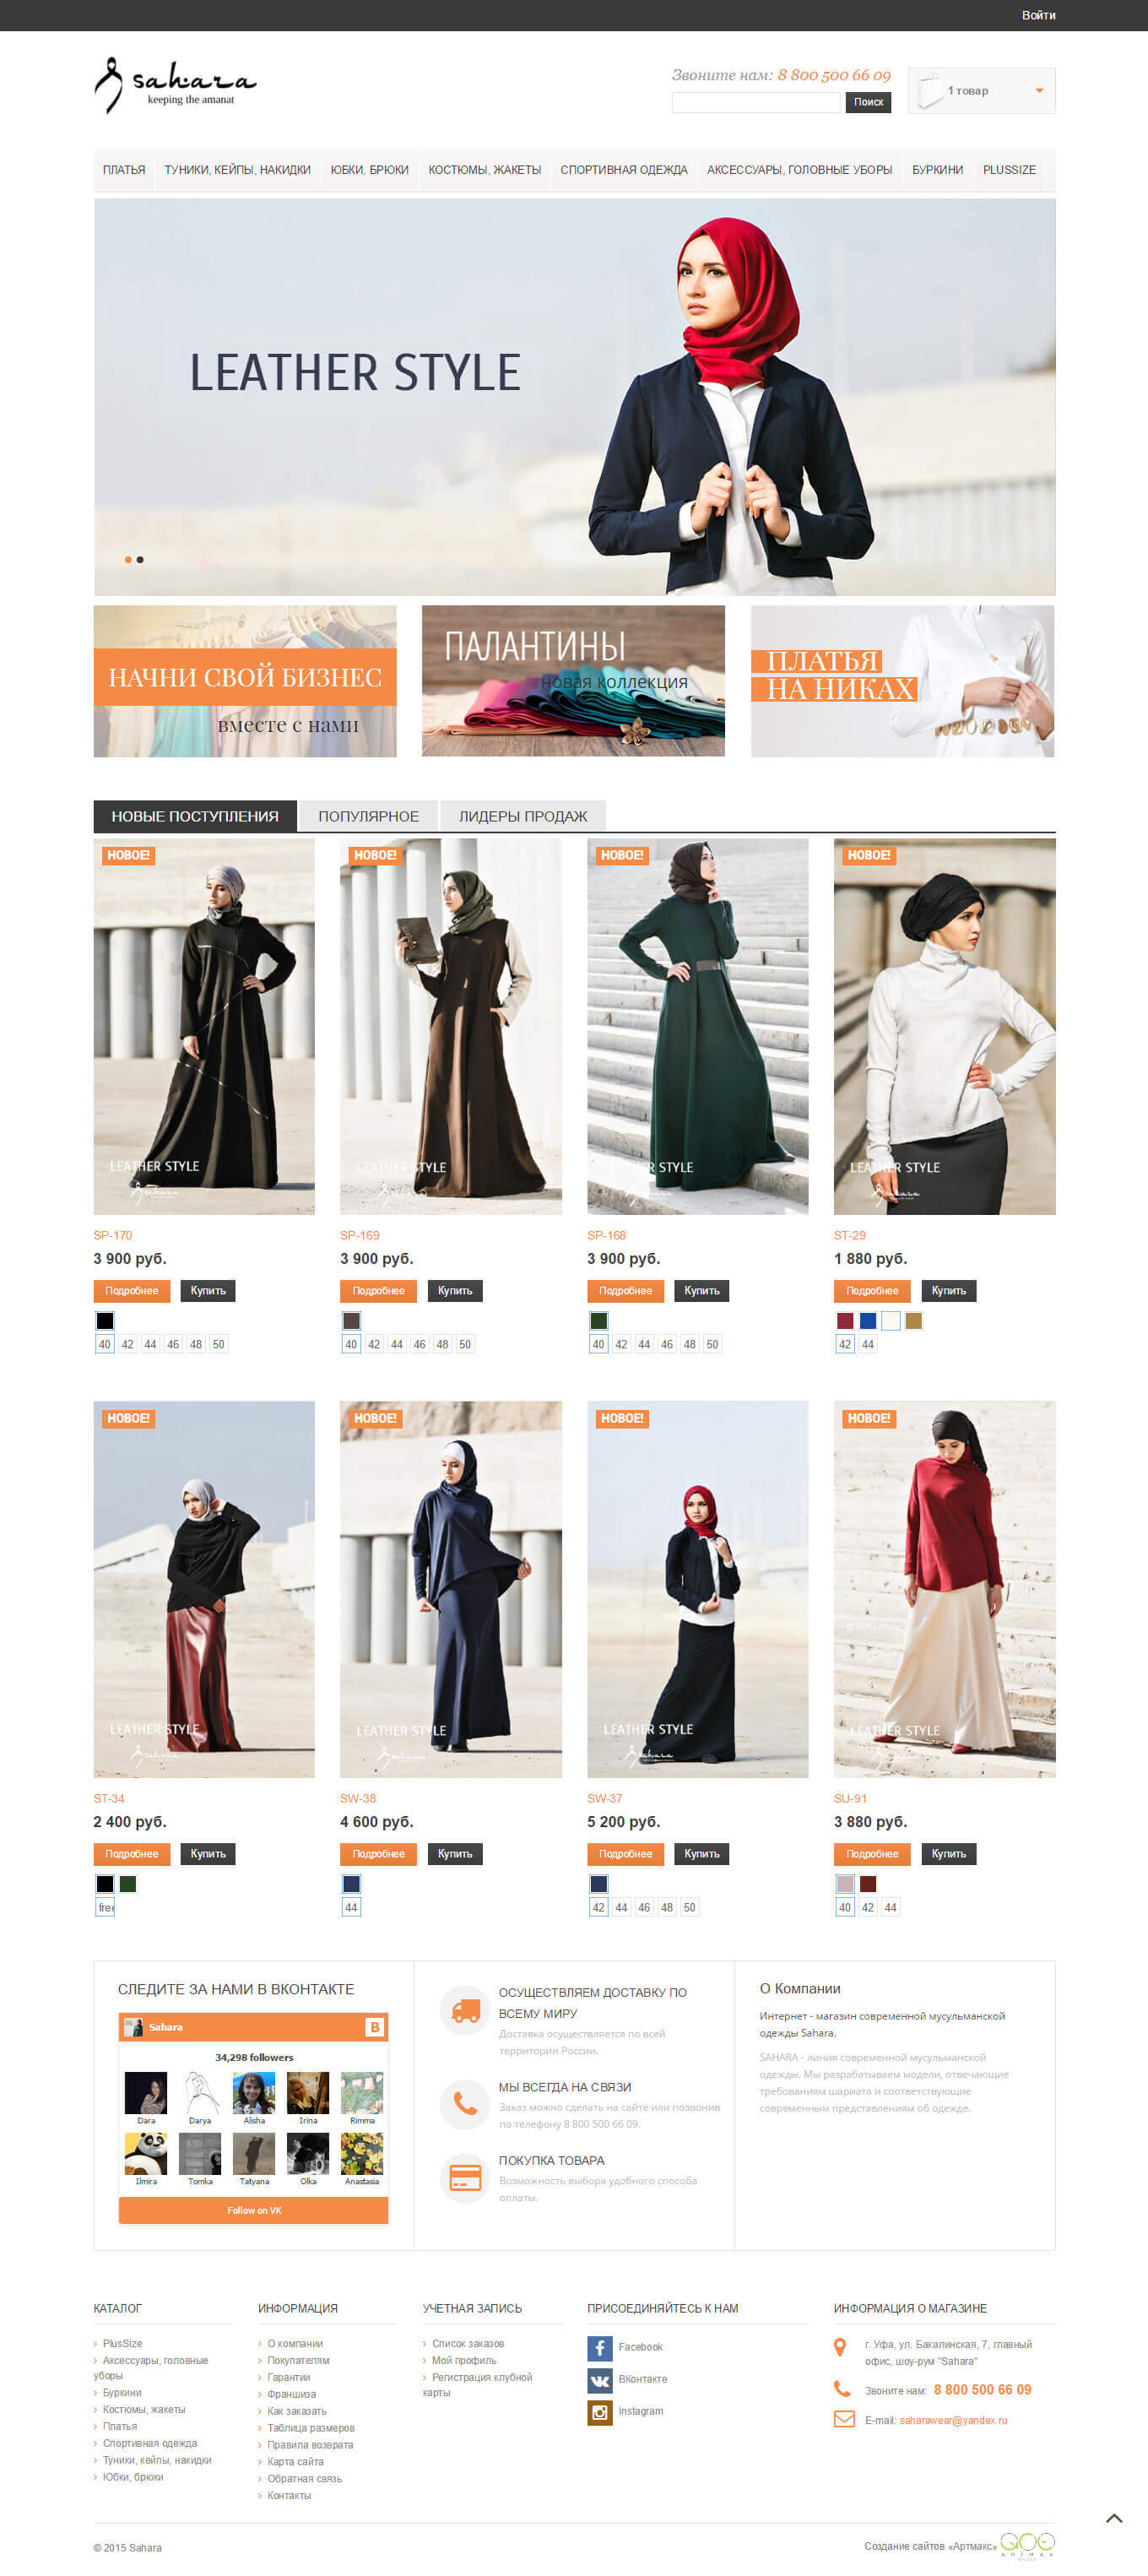 Создание интернет-магазина современной мусульманской одежды «Сахара»